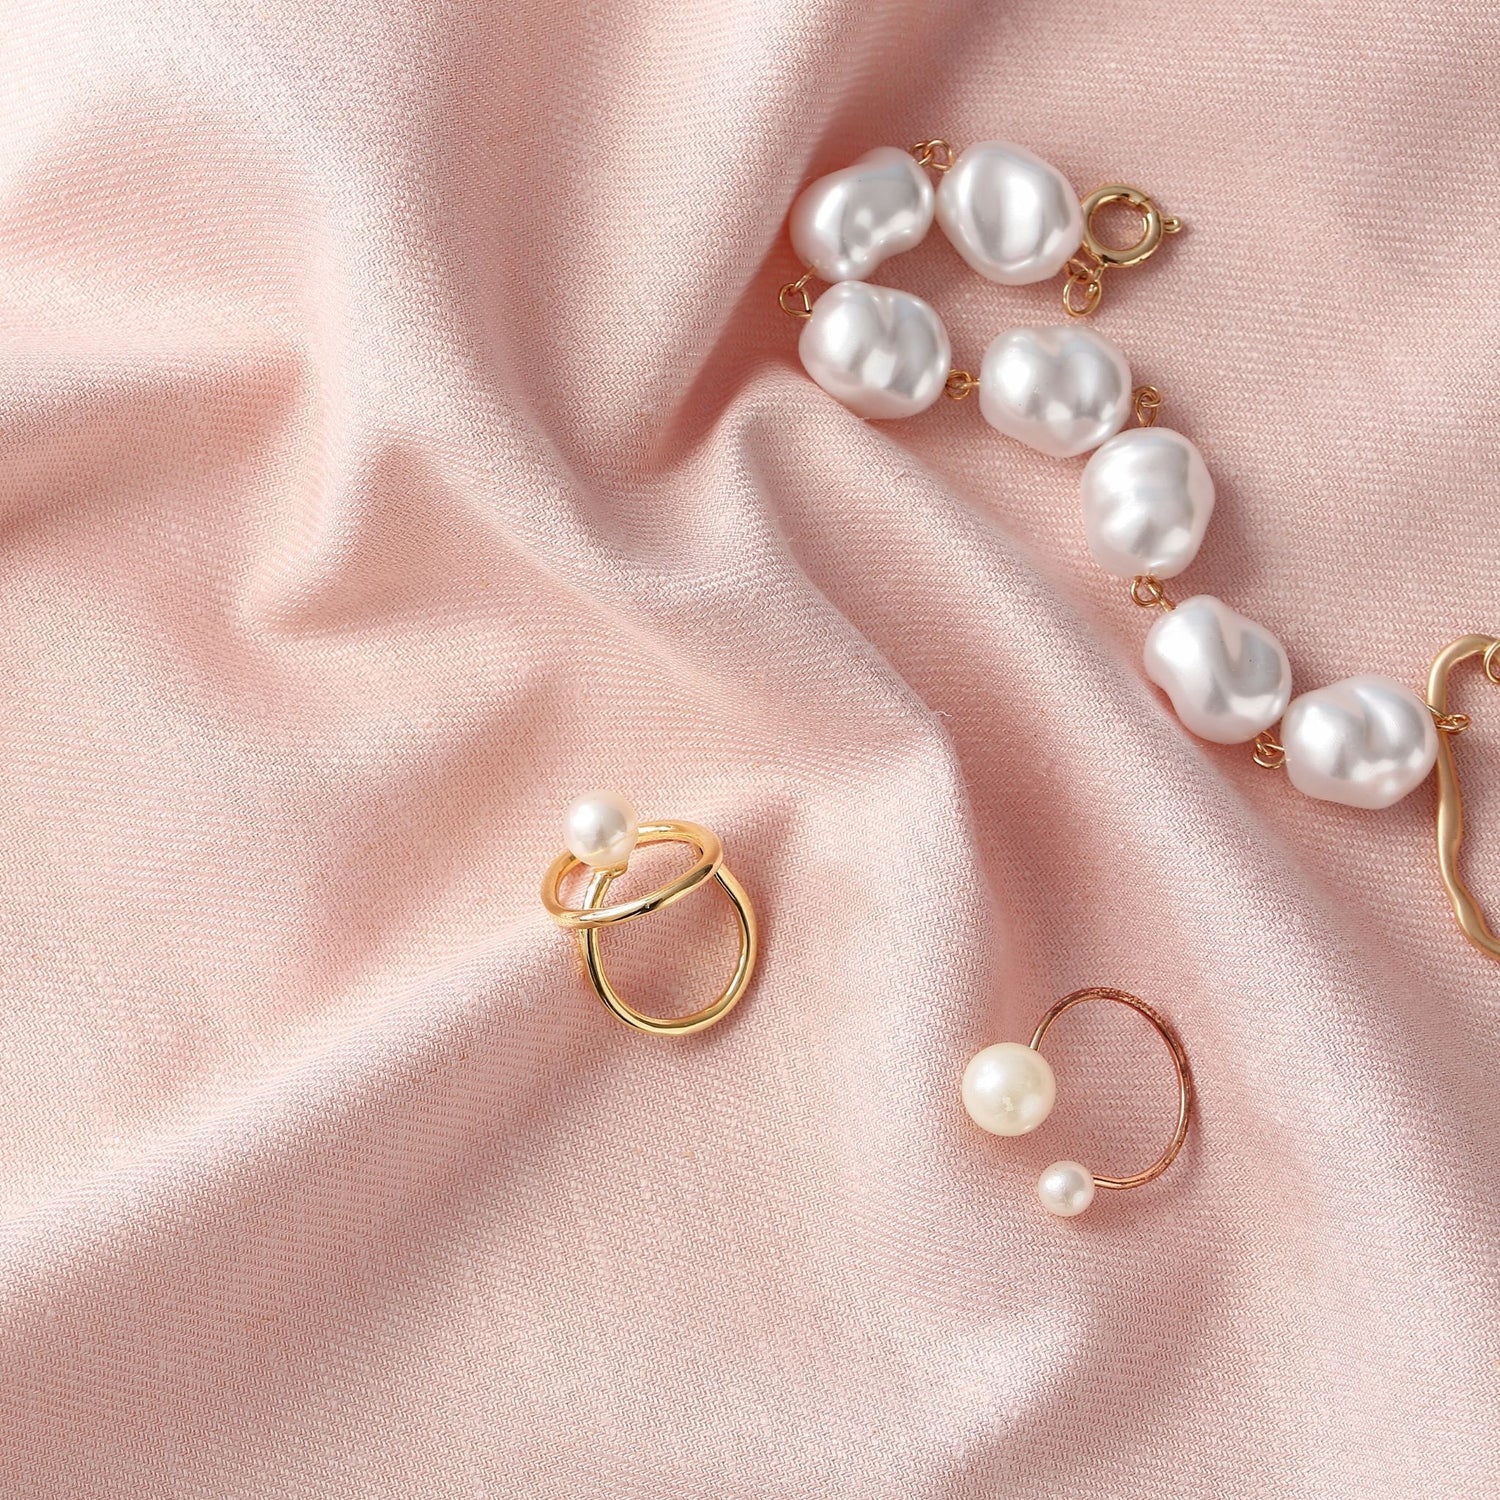 Parel sieraden op een roze achtergrond de blog gaat over de kwaliteit van onze sieraden